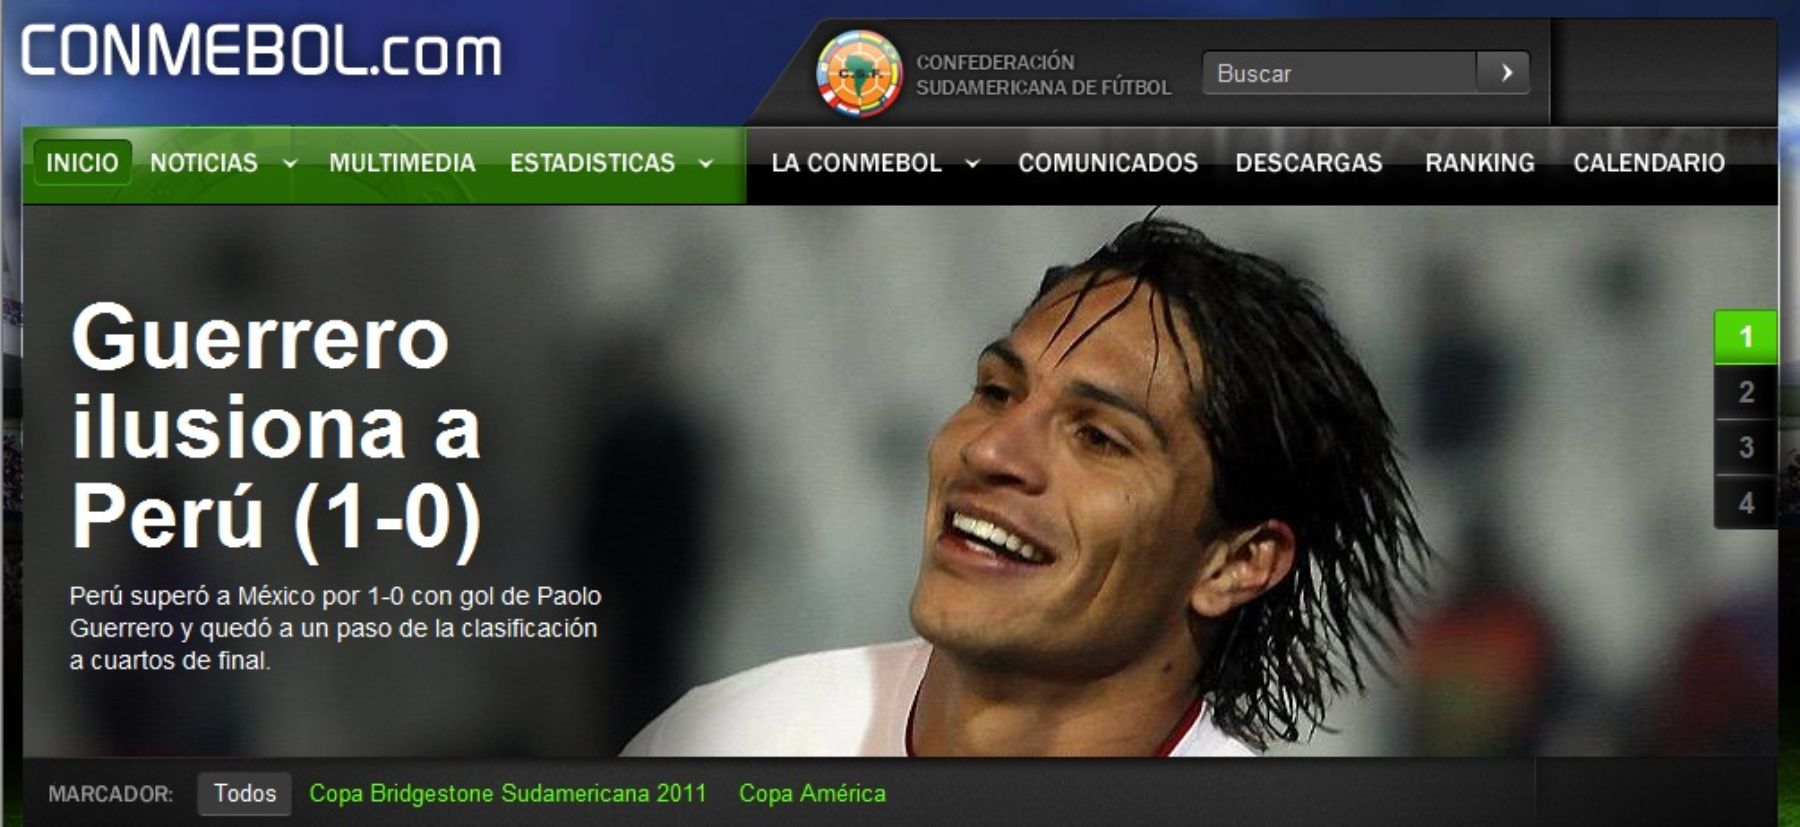 Paolo Guerrero volvió a anotar a favor de Perú. Foto: Página oficial de la Conmebol.